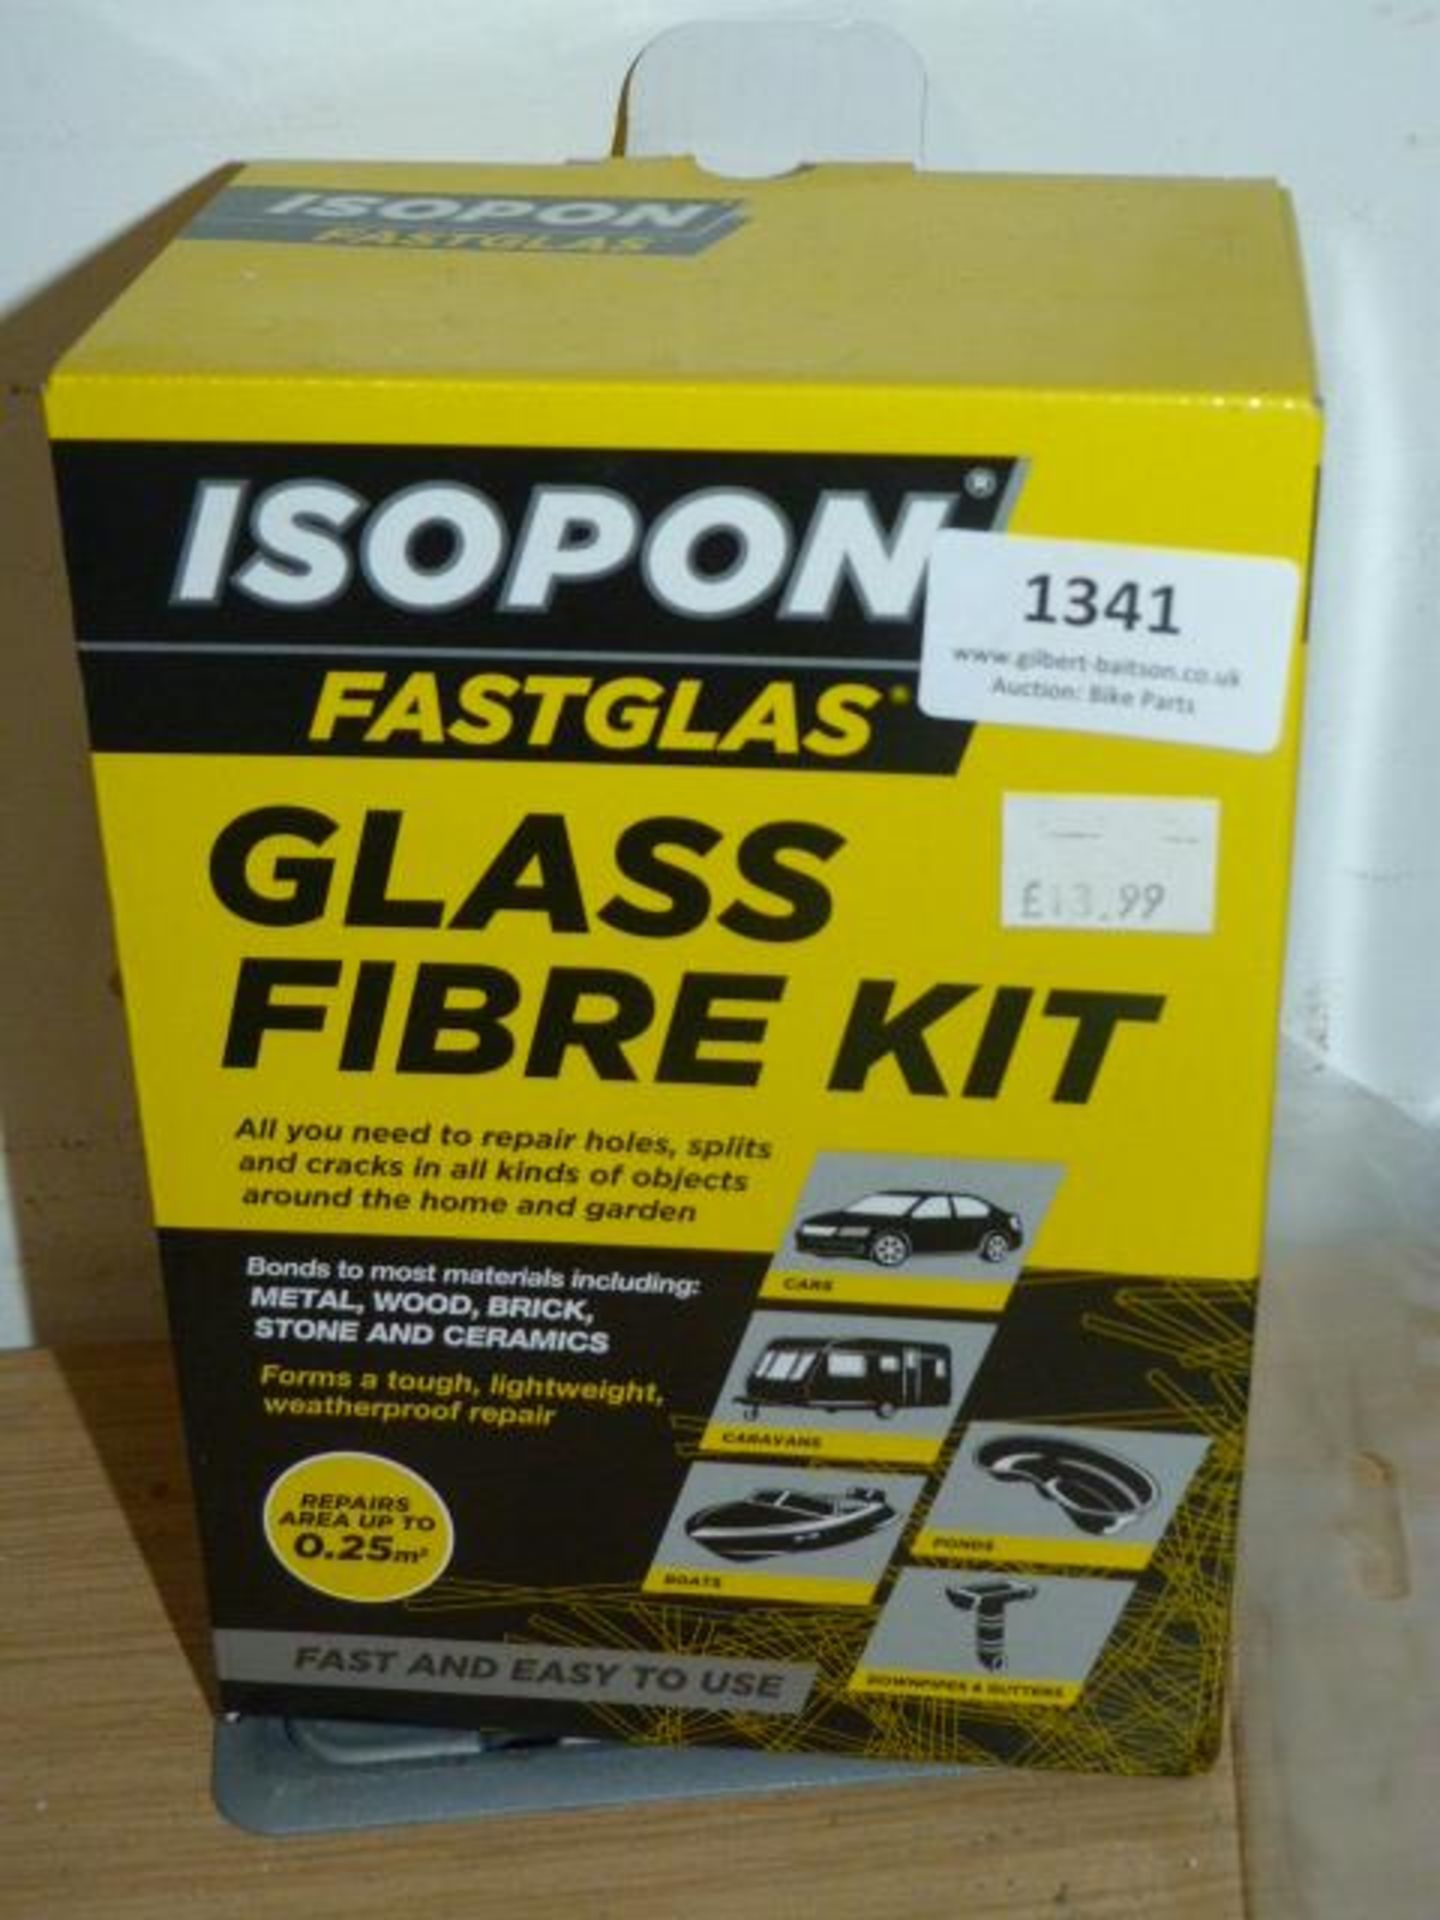 *Isopon Glass Fibre Kit